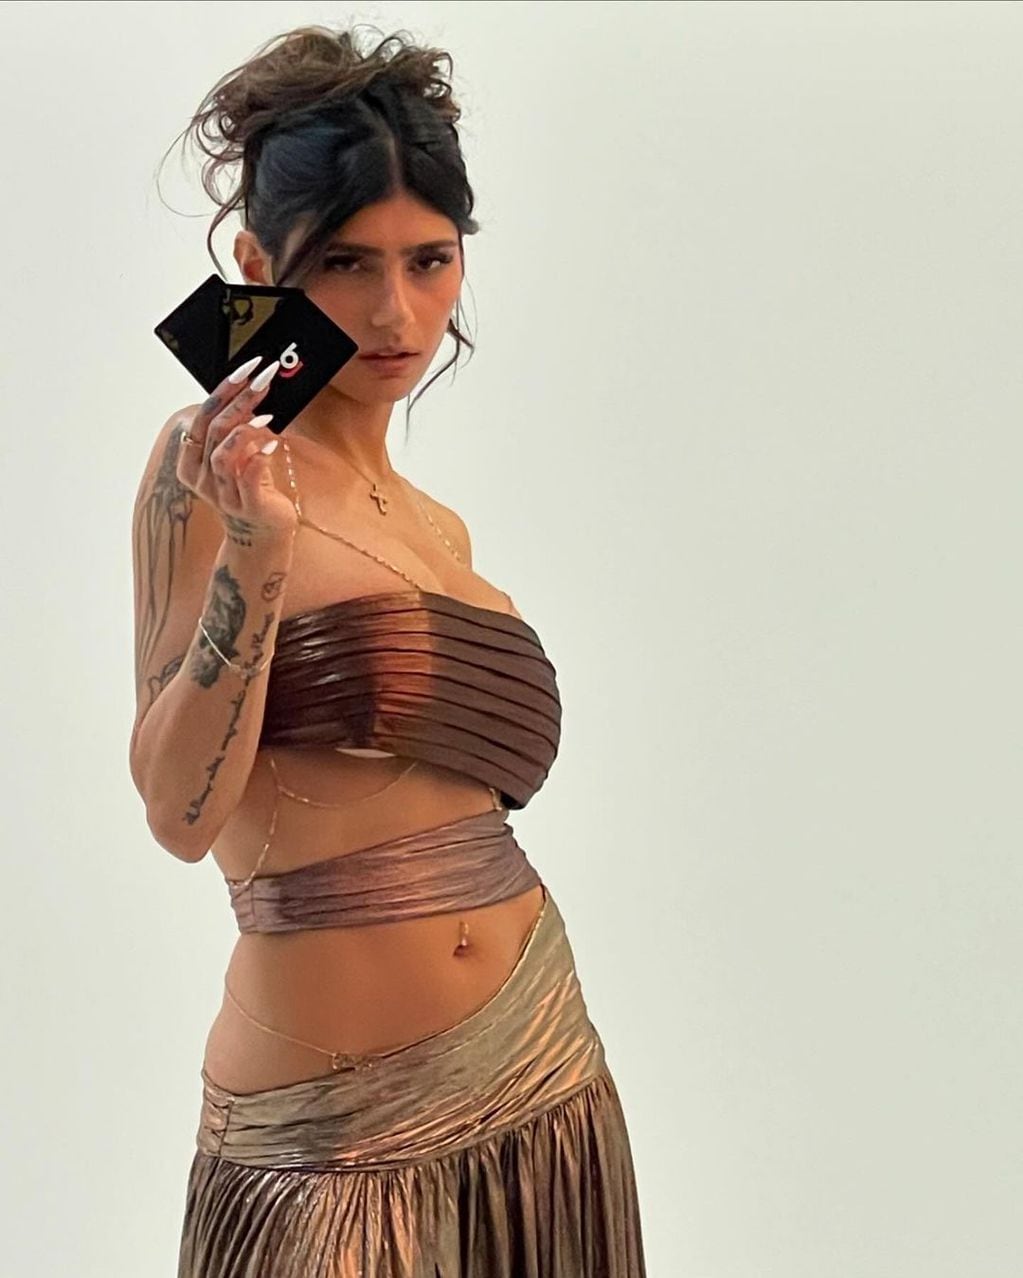 Dorado y brillos: Mia Khalifa deslumbró con un vestido de corpiño underboob y mostró mucha piel